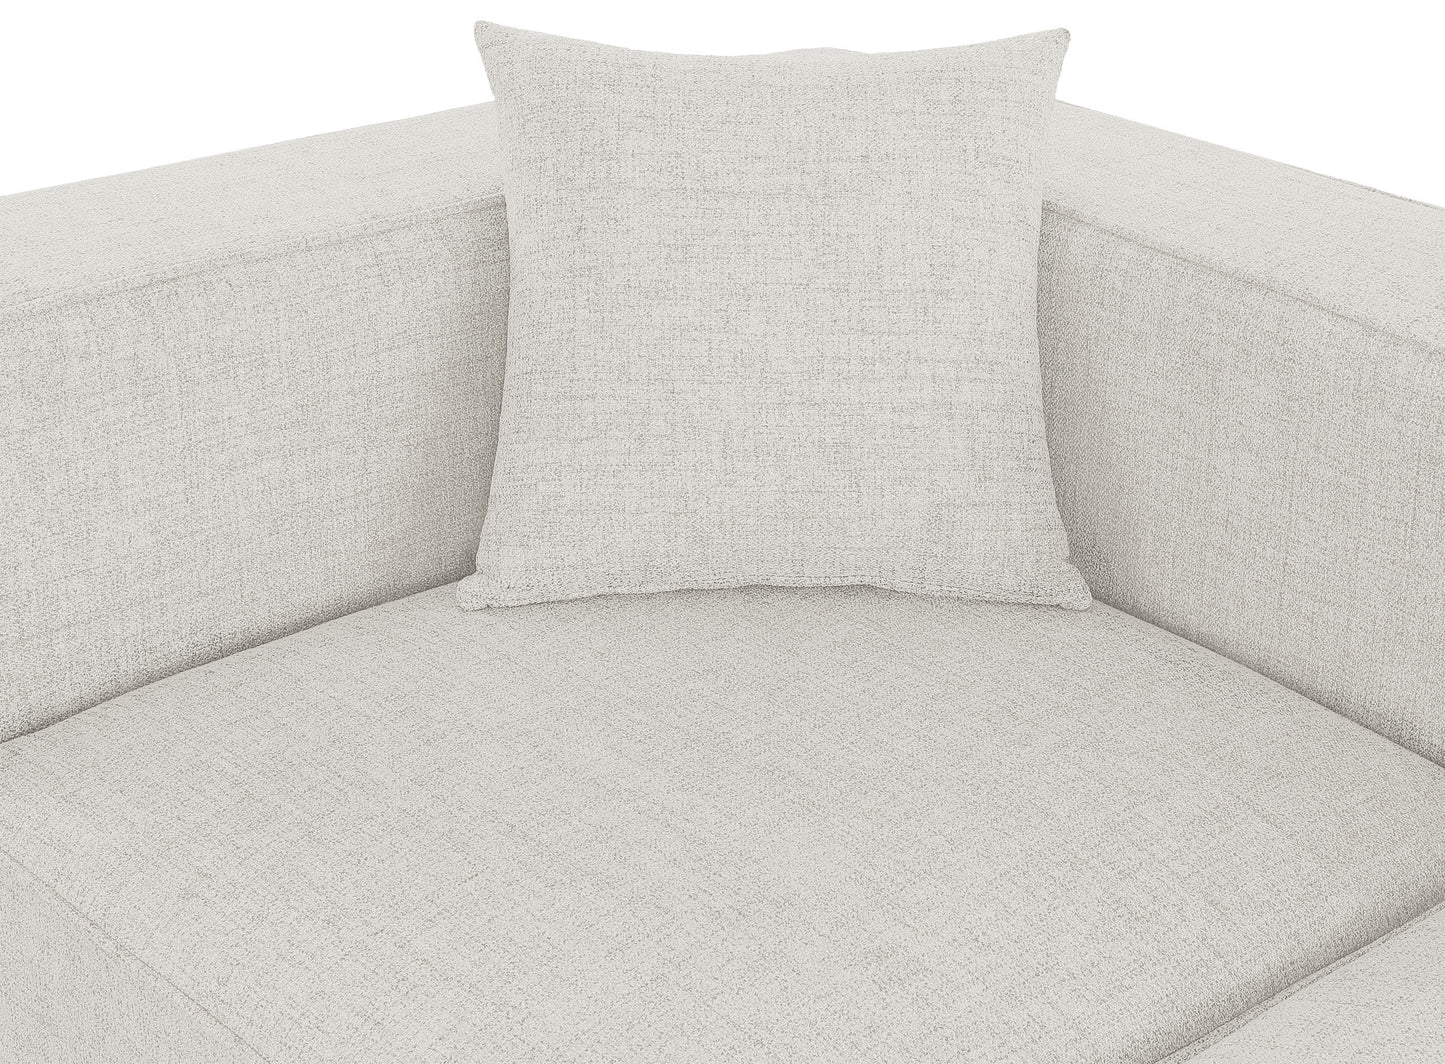 crescent cream durable linen textured modular sectional sec4b